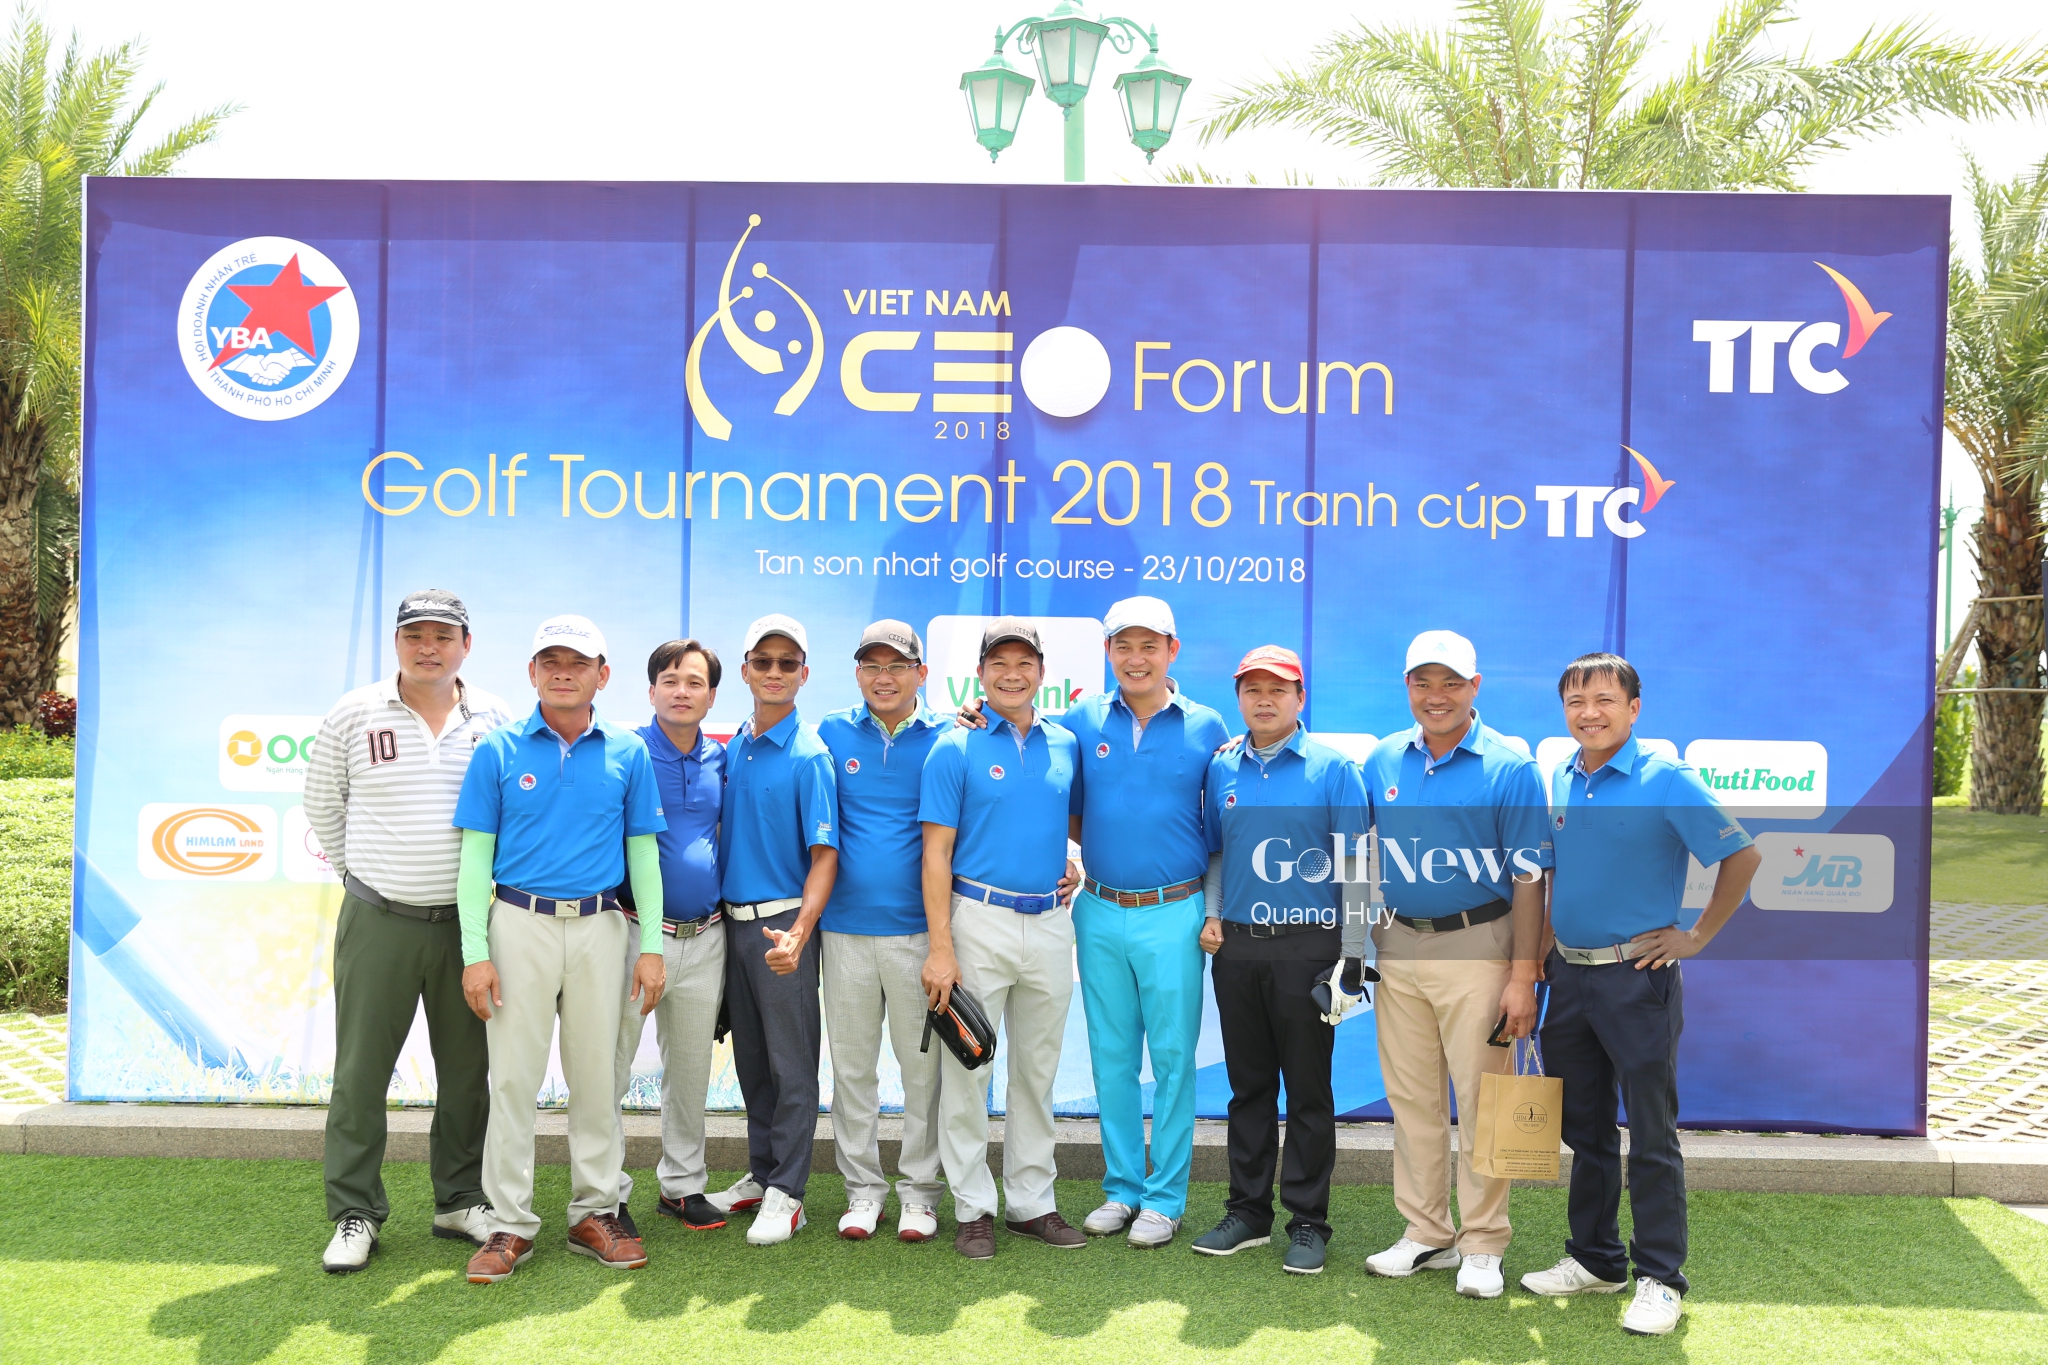 Giải 'Vietnam CEO Forum Golf Tournament 2018 – Tranh Cúp TTC' thu hút 140 golf tham dự